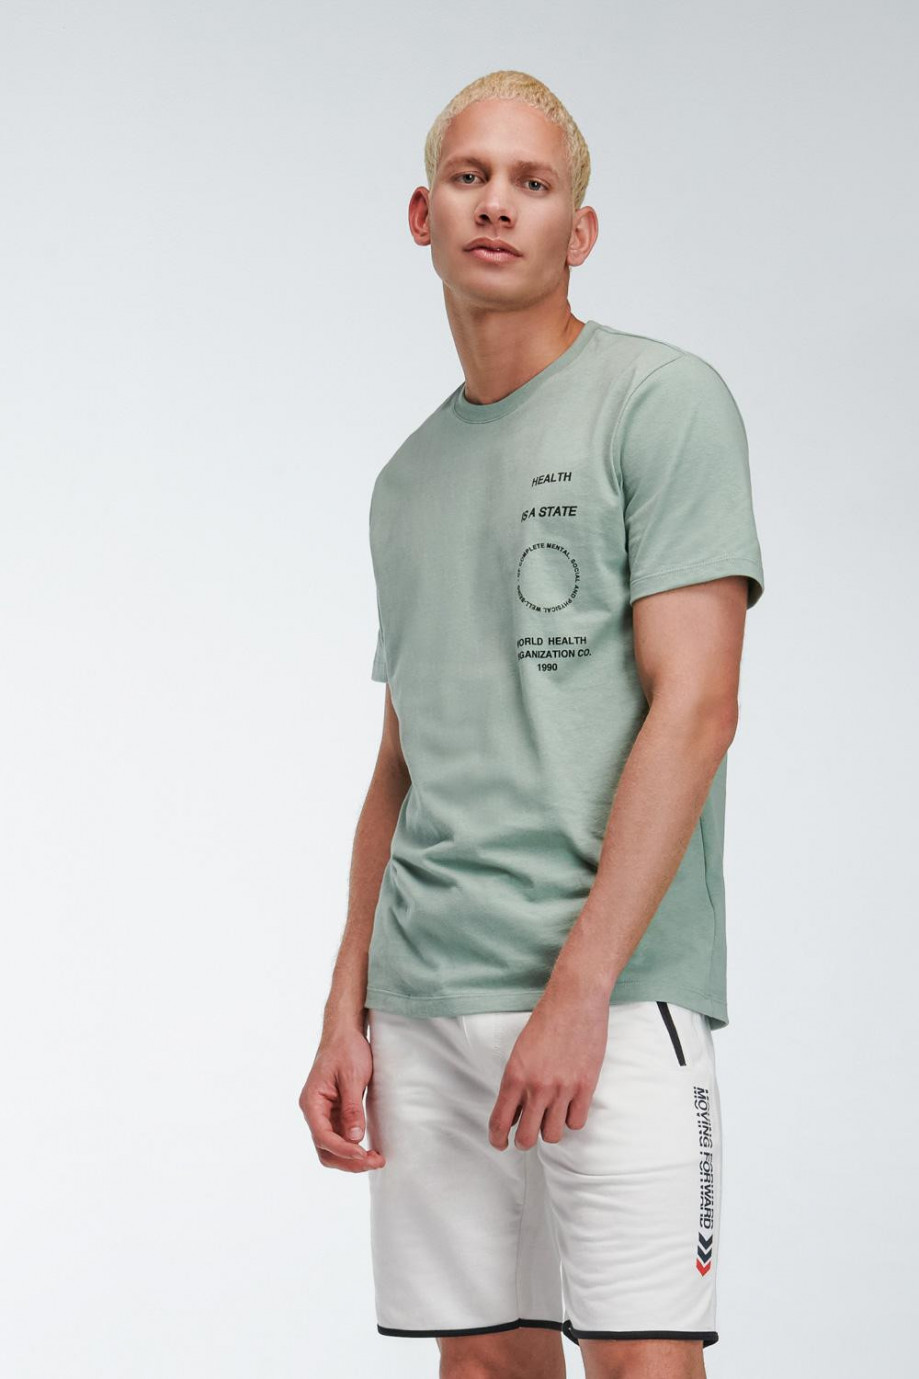 Camiseta unicolor con texto estampado y cuello redondo